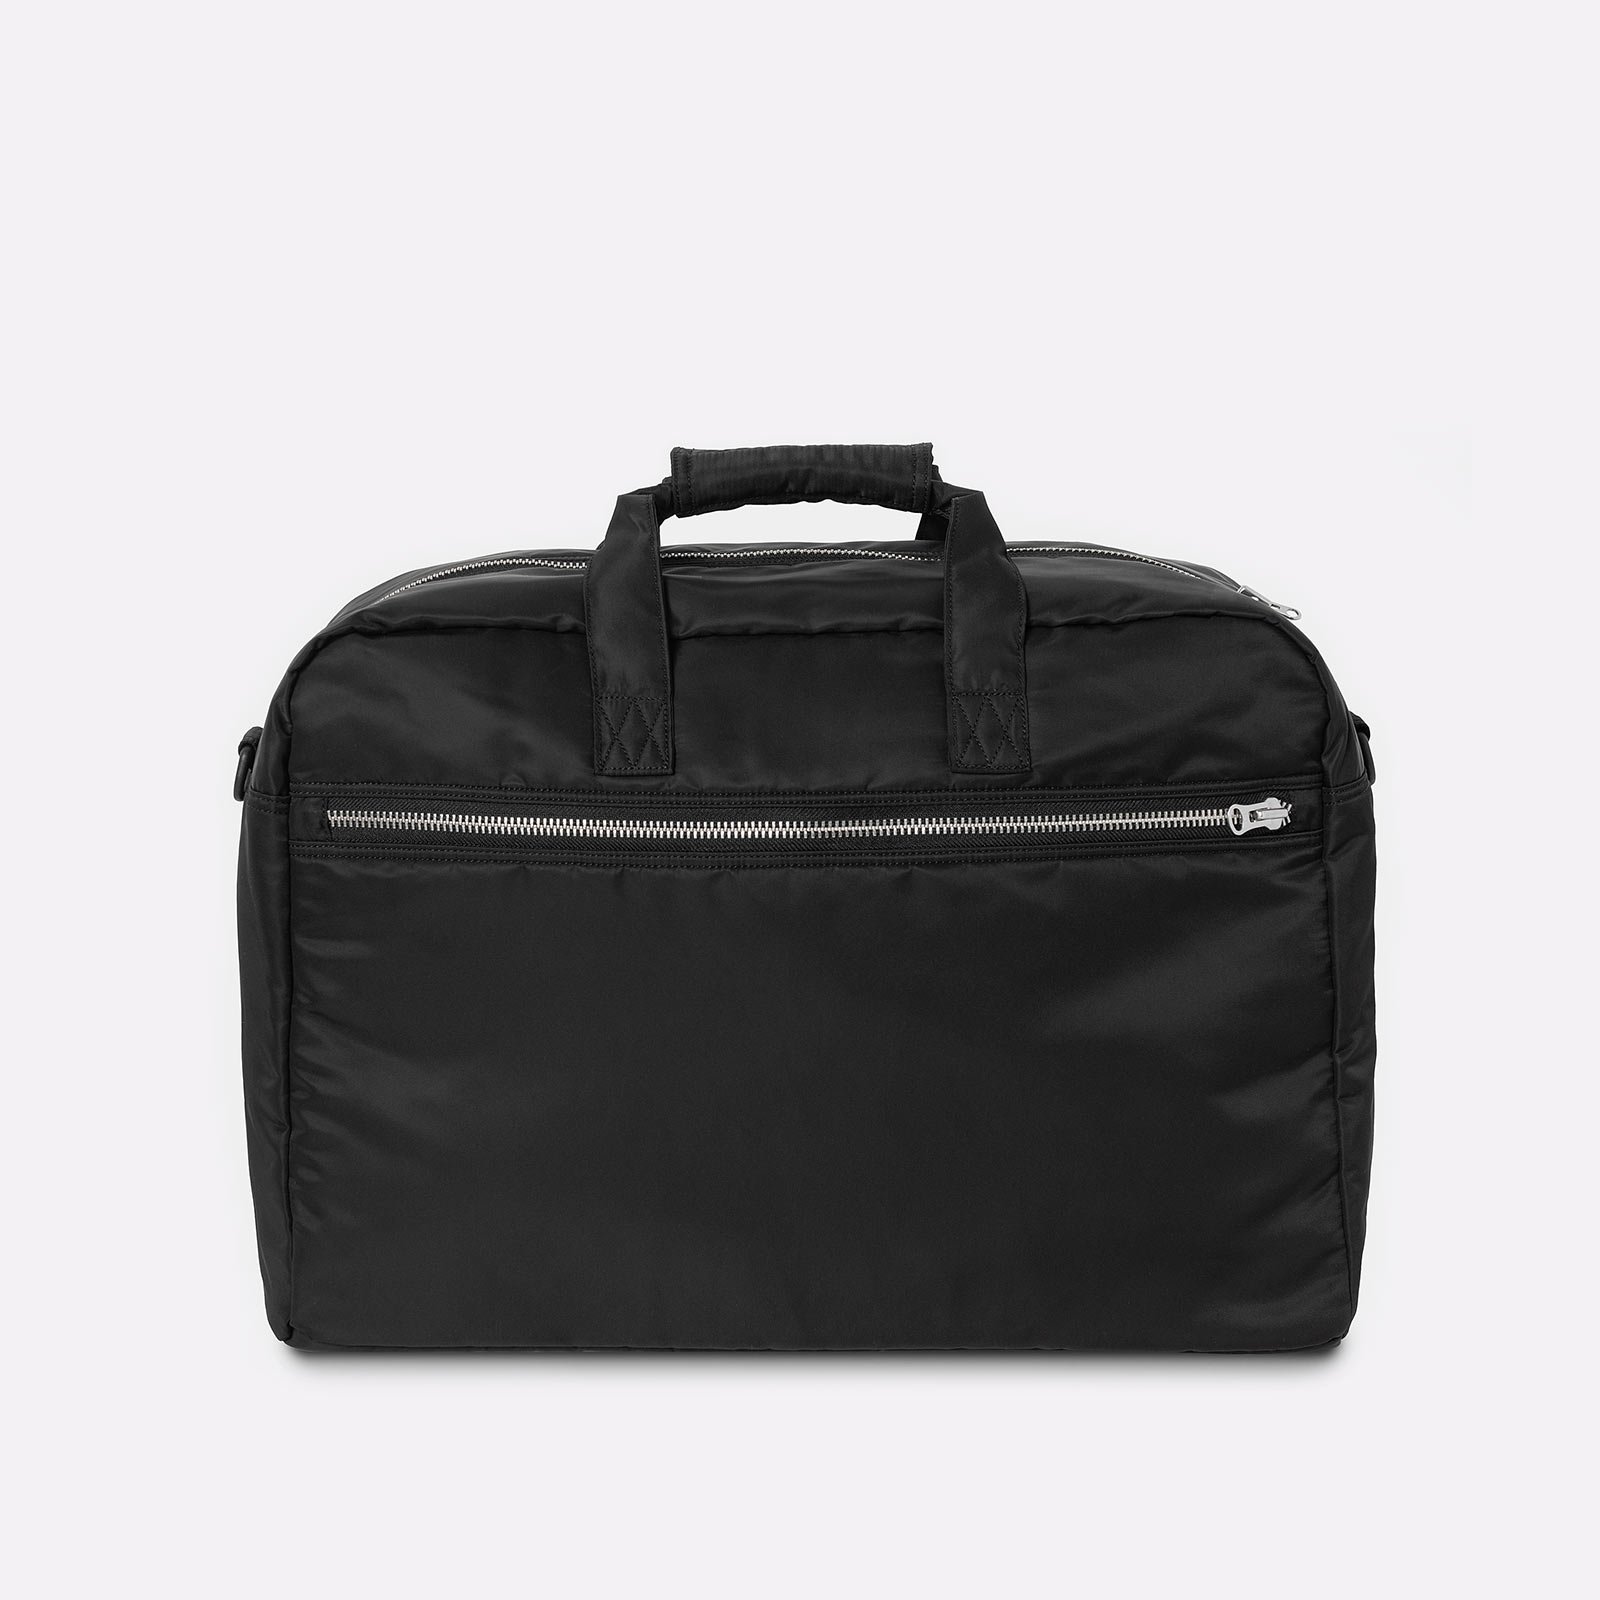  черная сумка Carhartt WIP Otley Weekend Bag I033105-black - цена, описание, фото 2